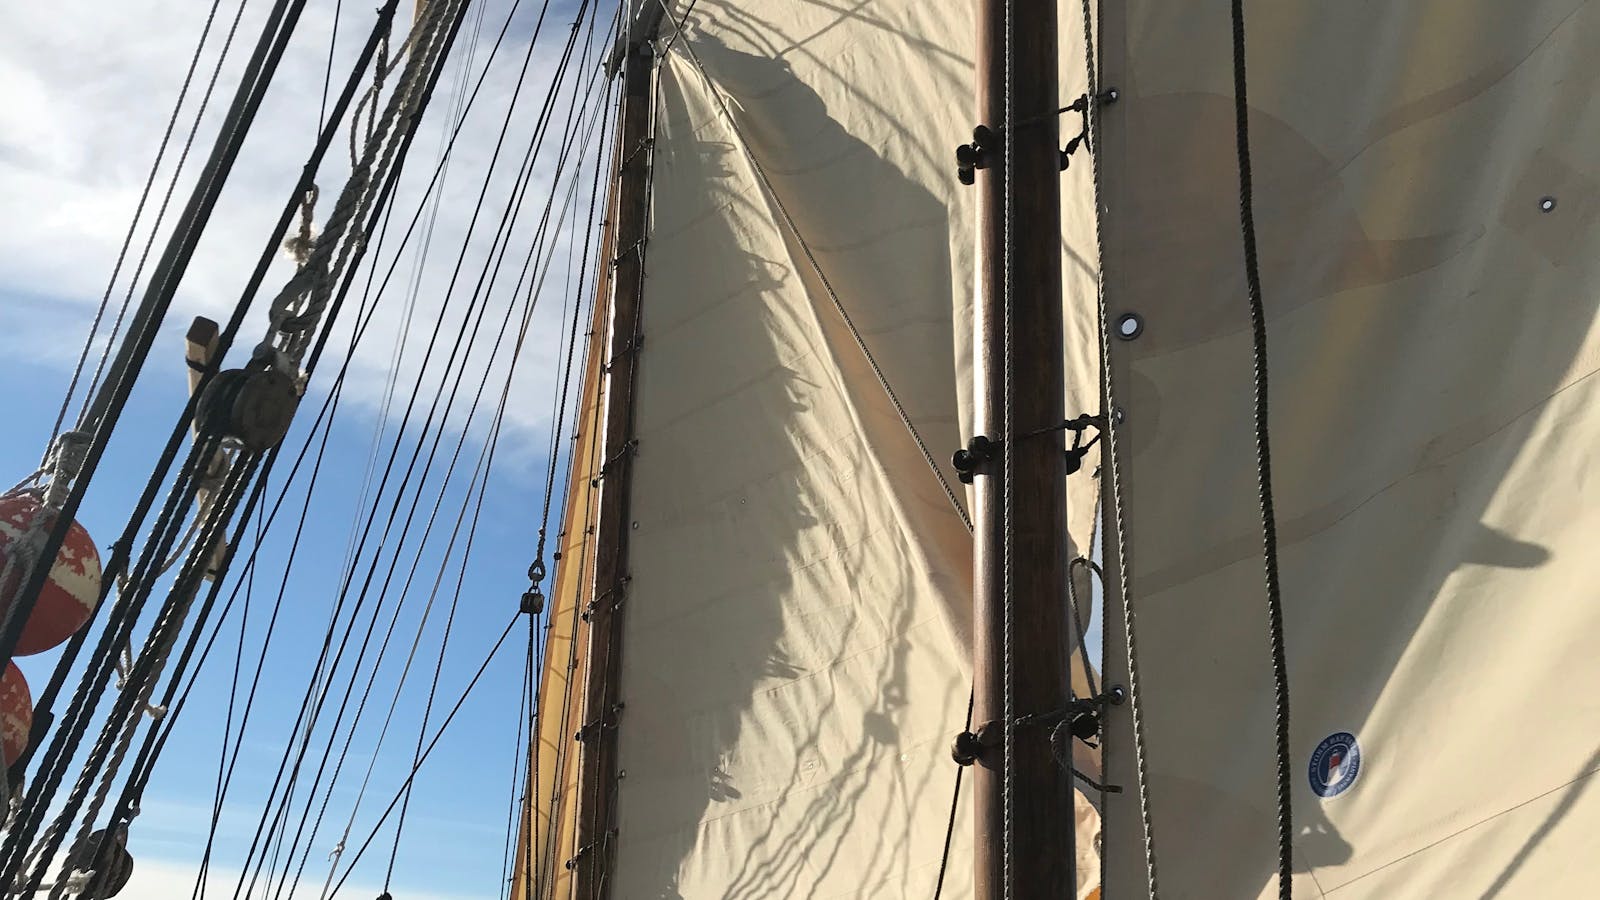 SV Rhona H Sails set